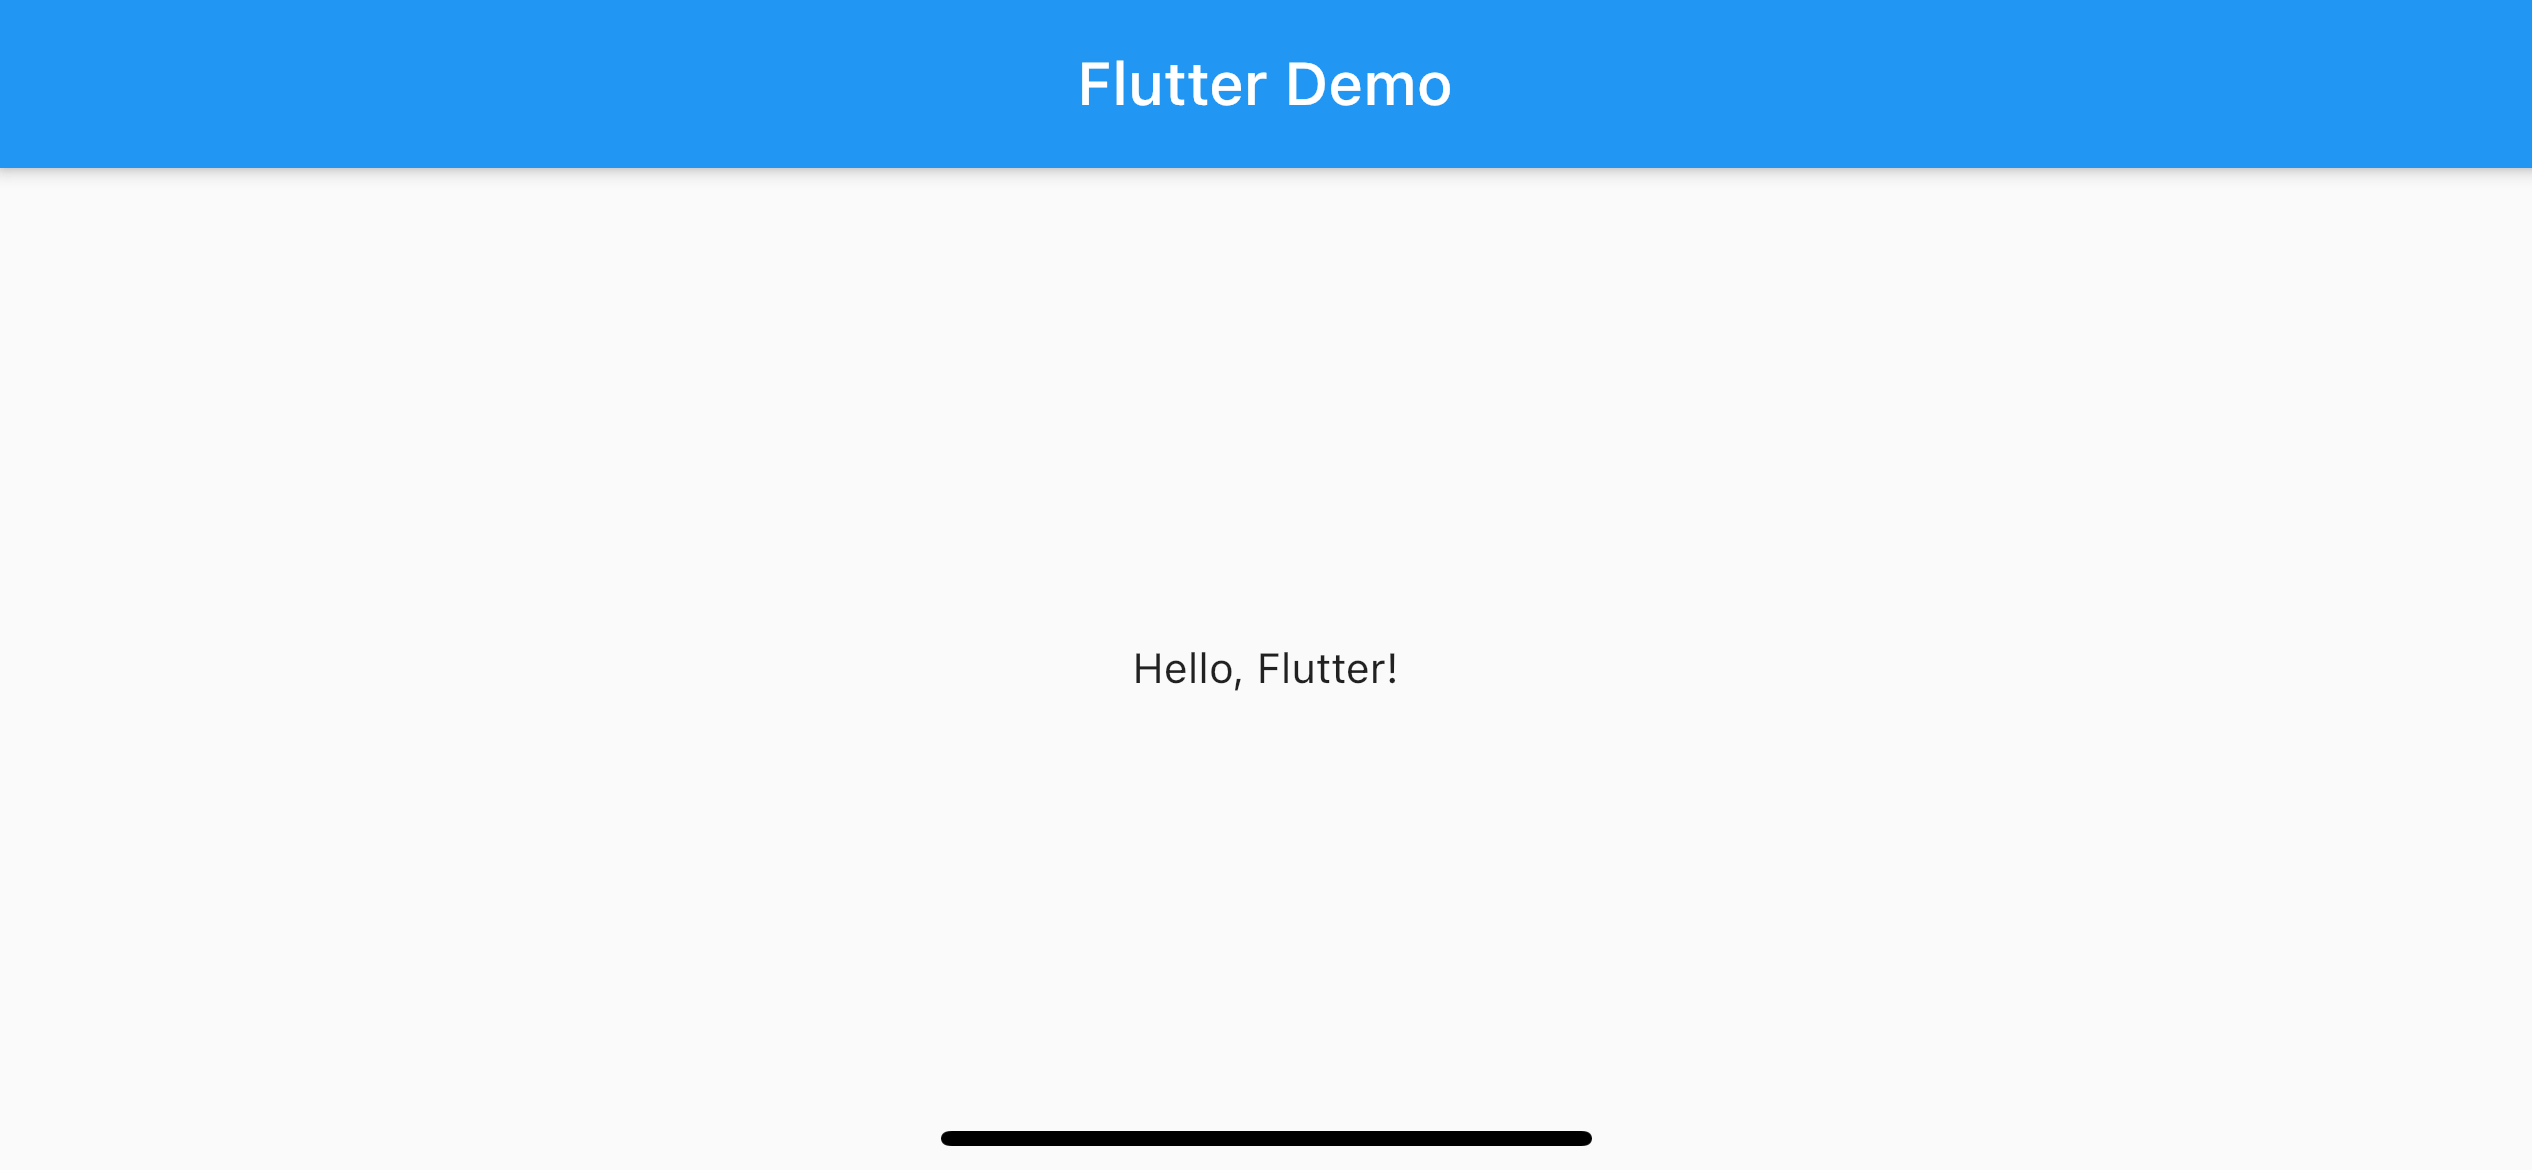 Giao diện tràn trề sự sang trọng và đơn giản, giúp bạn tạo ra một cảm giác đẹp mắt và nhẹ nhàng cho người dùng với thanh điều hướng trong suốt của Flutter. Hãy xem hình ảnh để tận hưởng sự thông minh của Flutter!